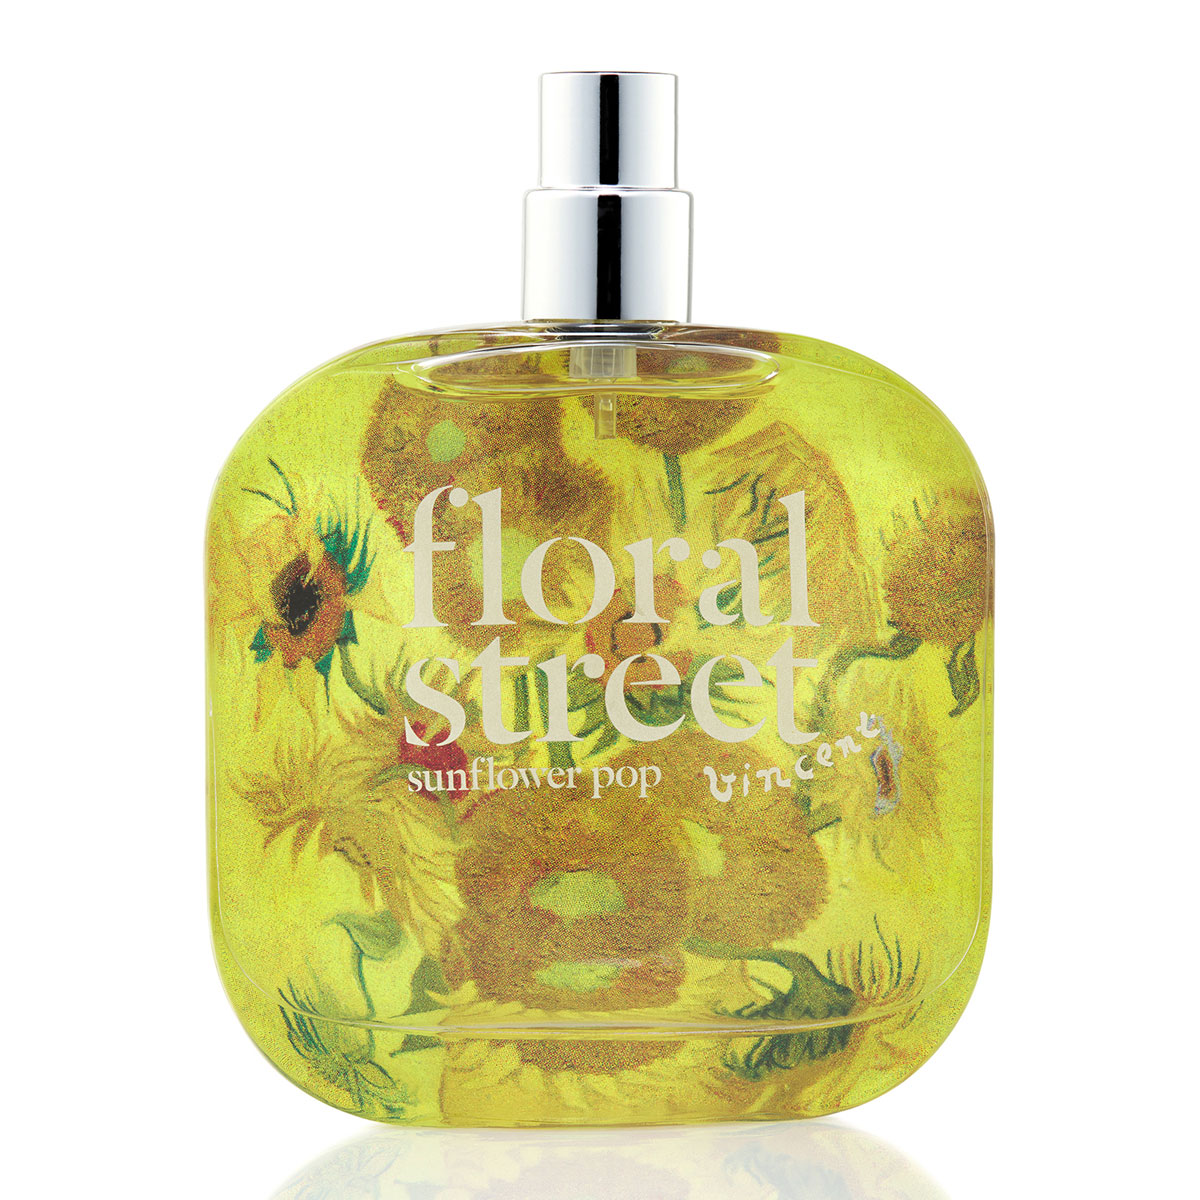 Floral Street Sunflower Pop Eau De Parfum 100Ml